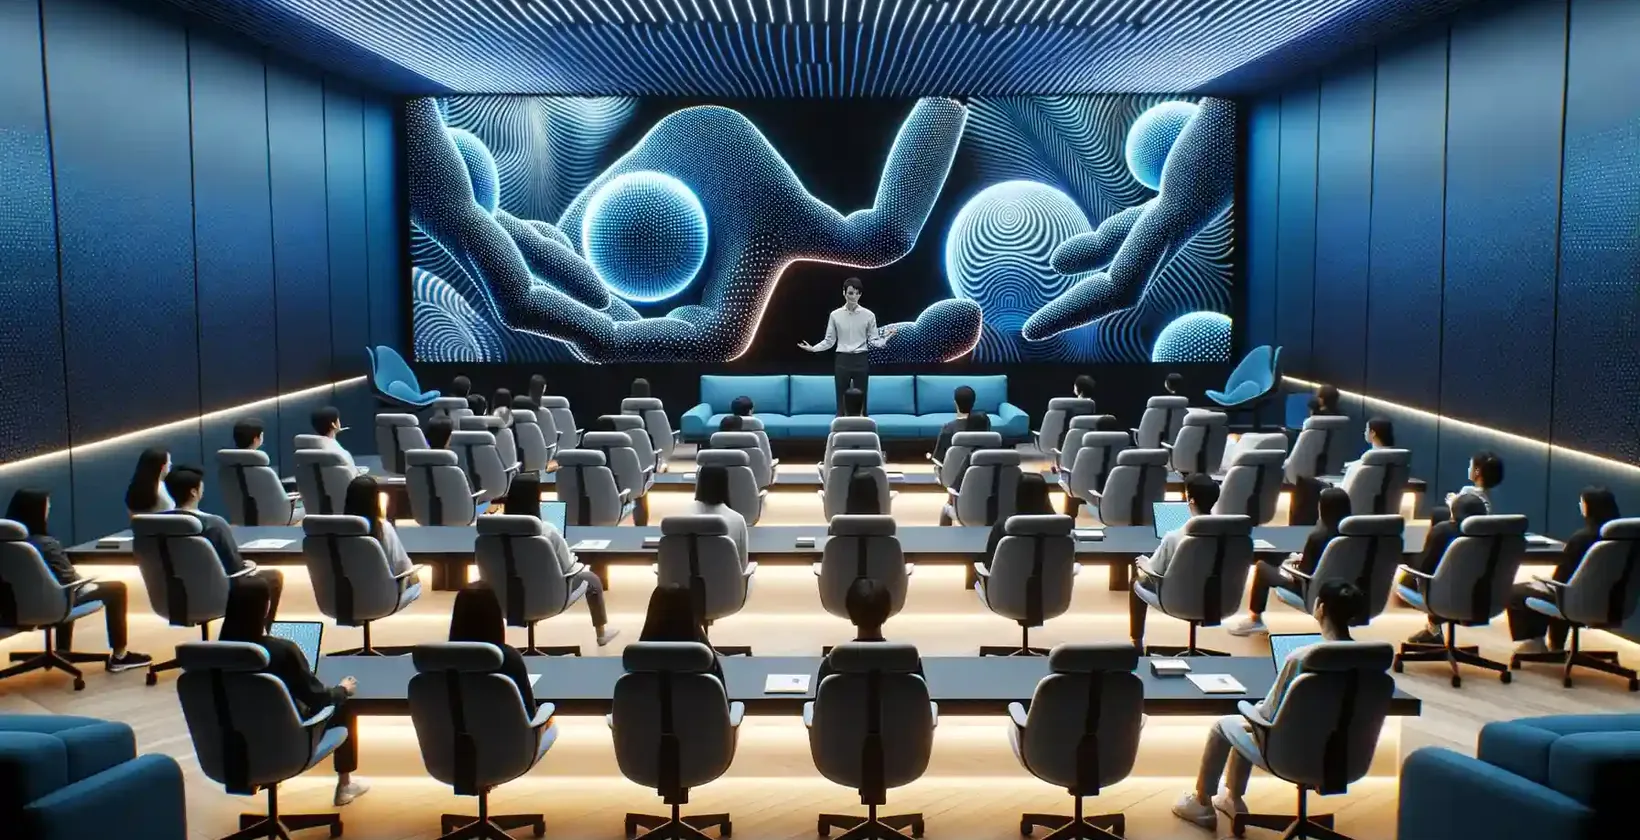 Moderno salão de palestras com participantes sentados em cadeiras macias, cada um equipado com estações de trabalho individuais